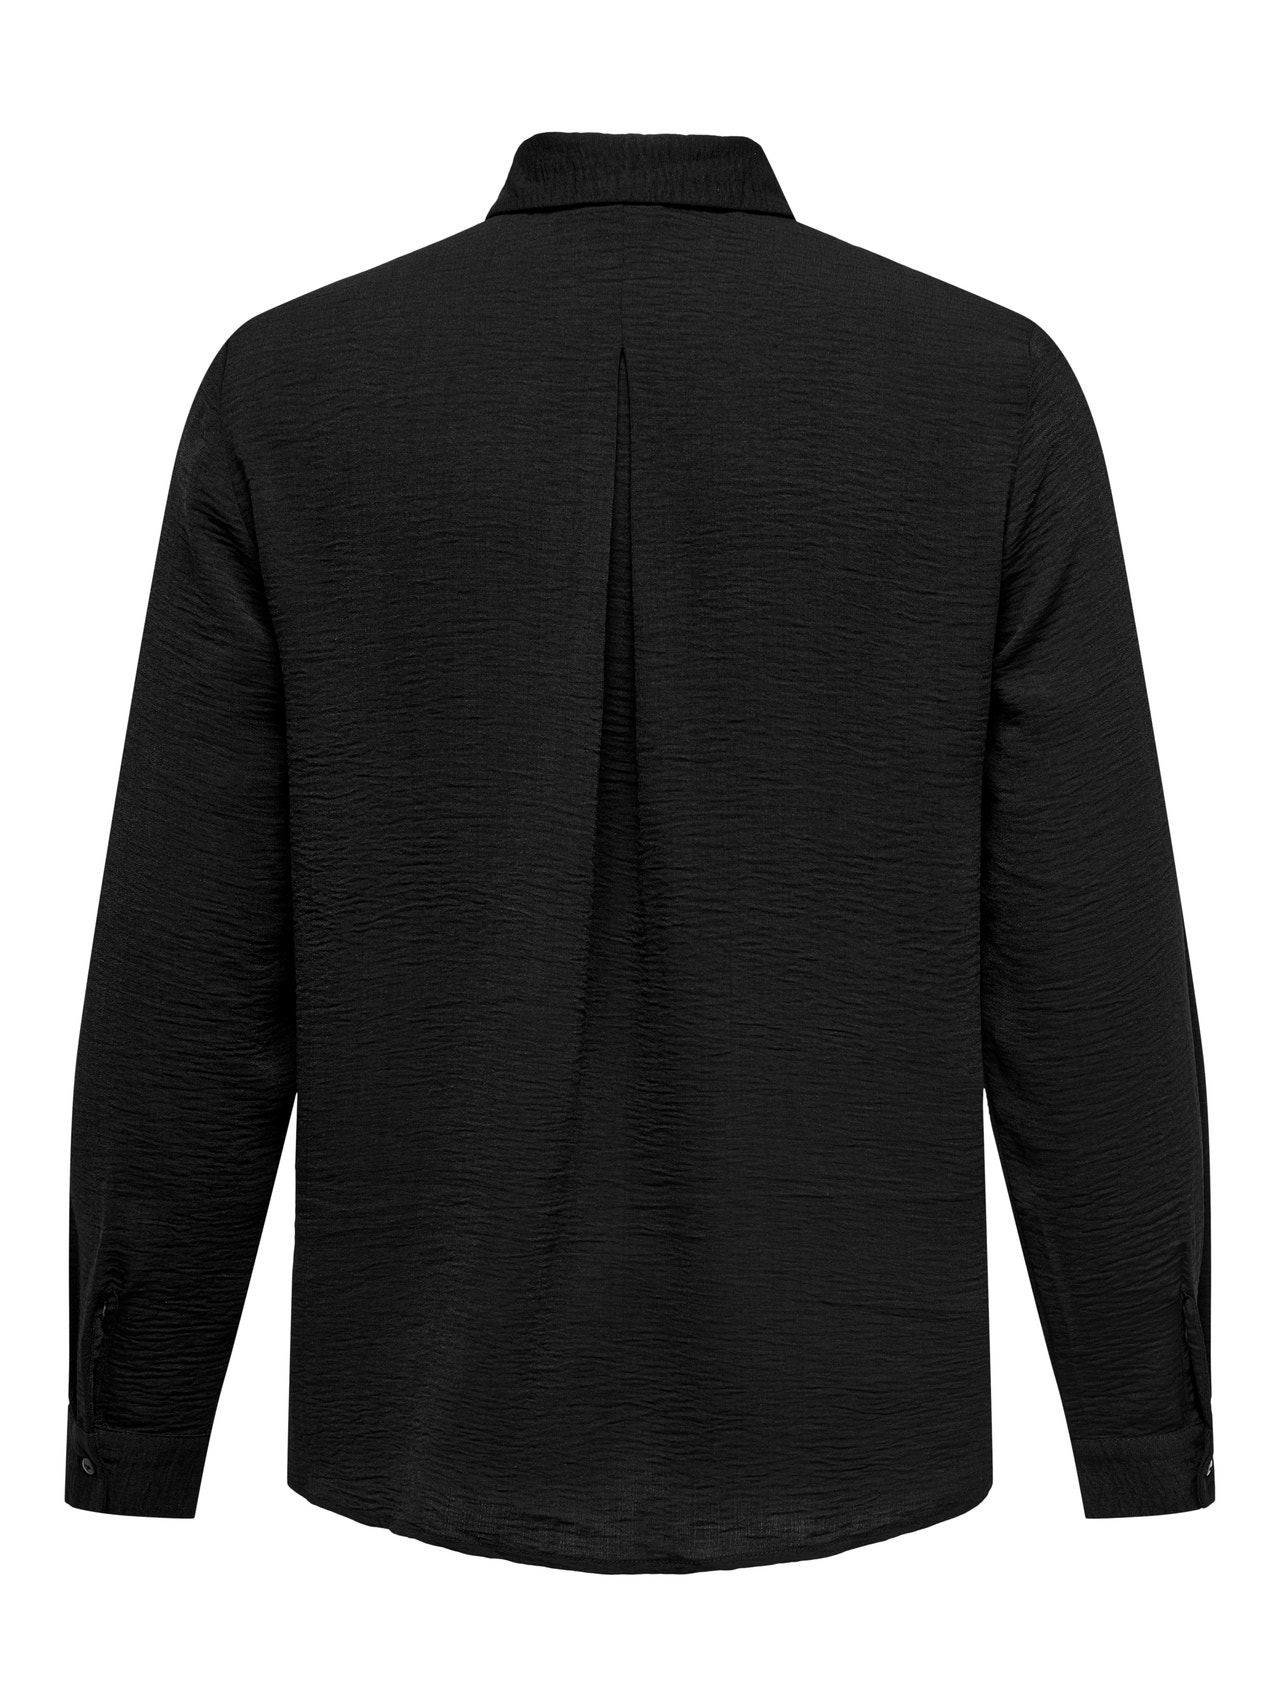 ONLY Camisas Corte regular Cuello de camisa -Black - 15335765